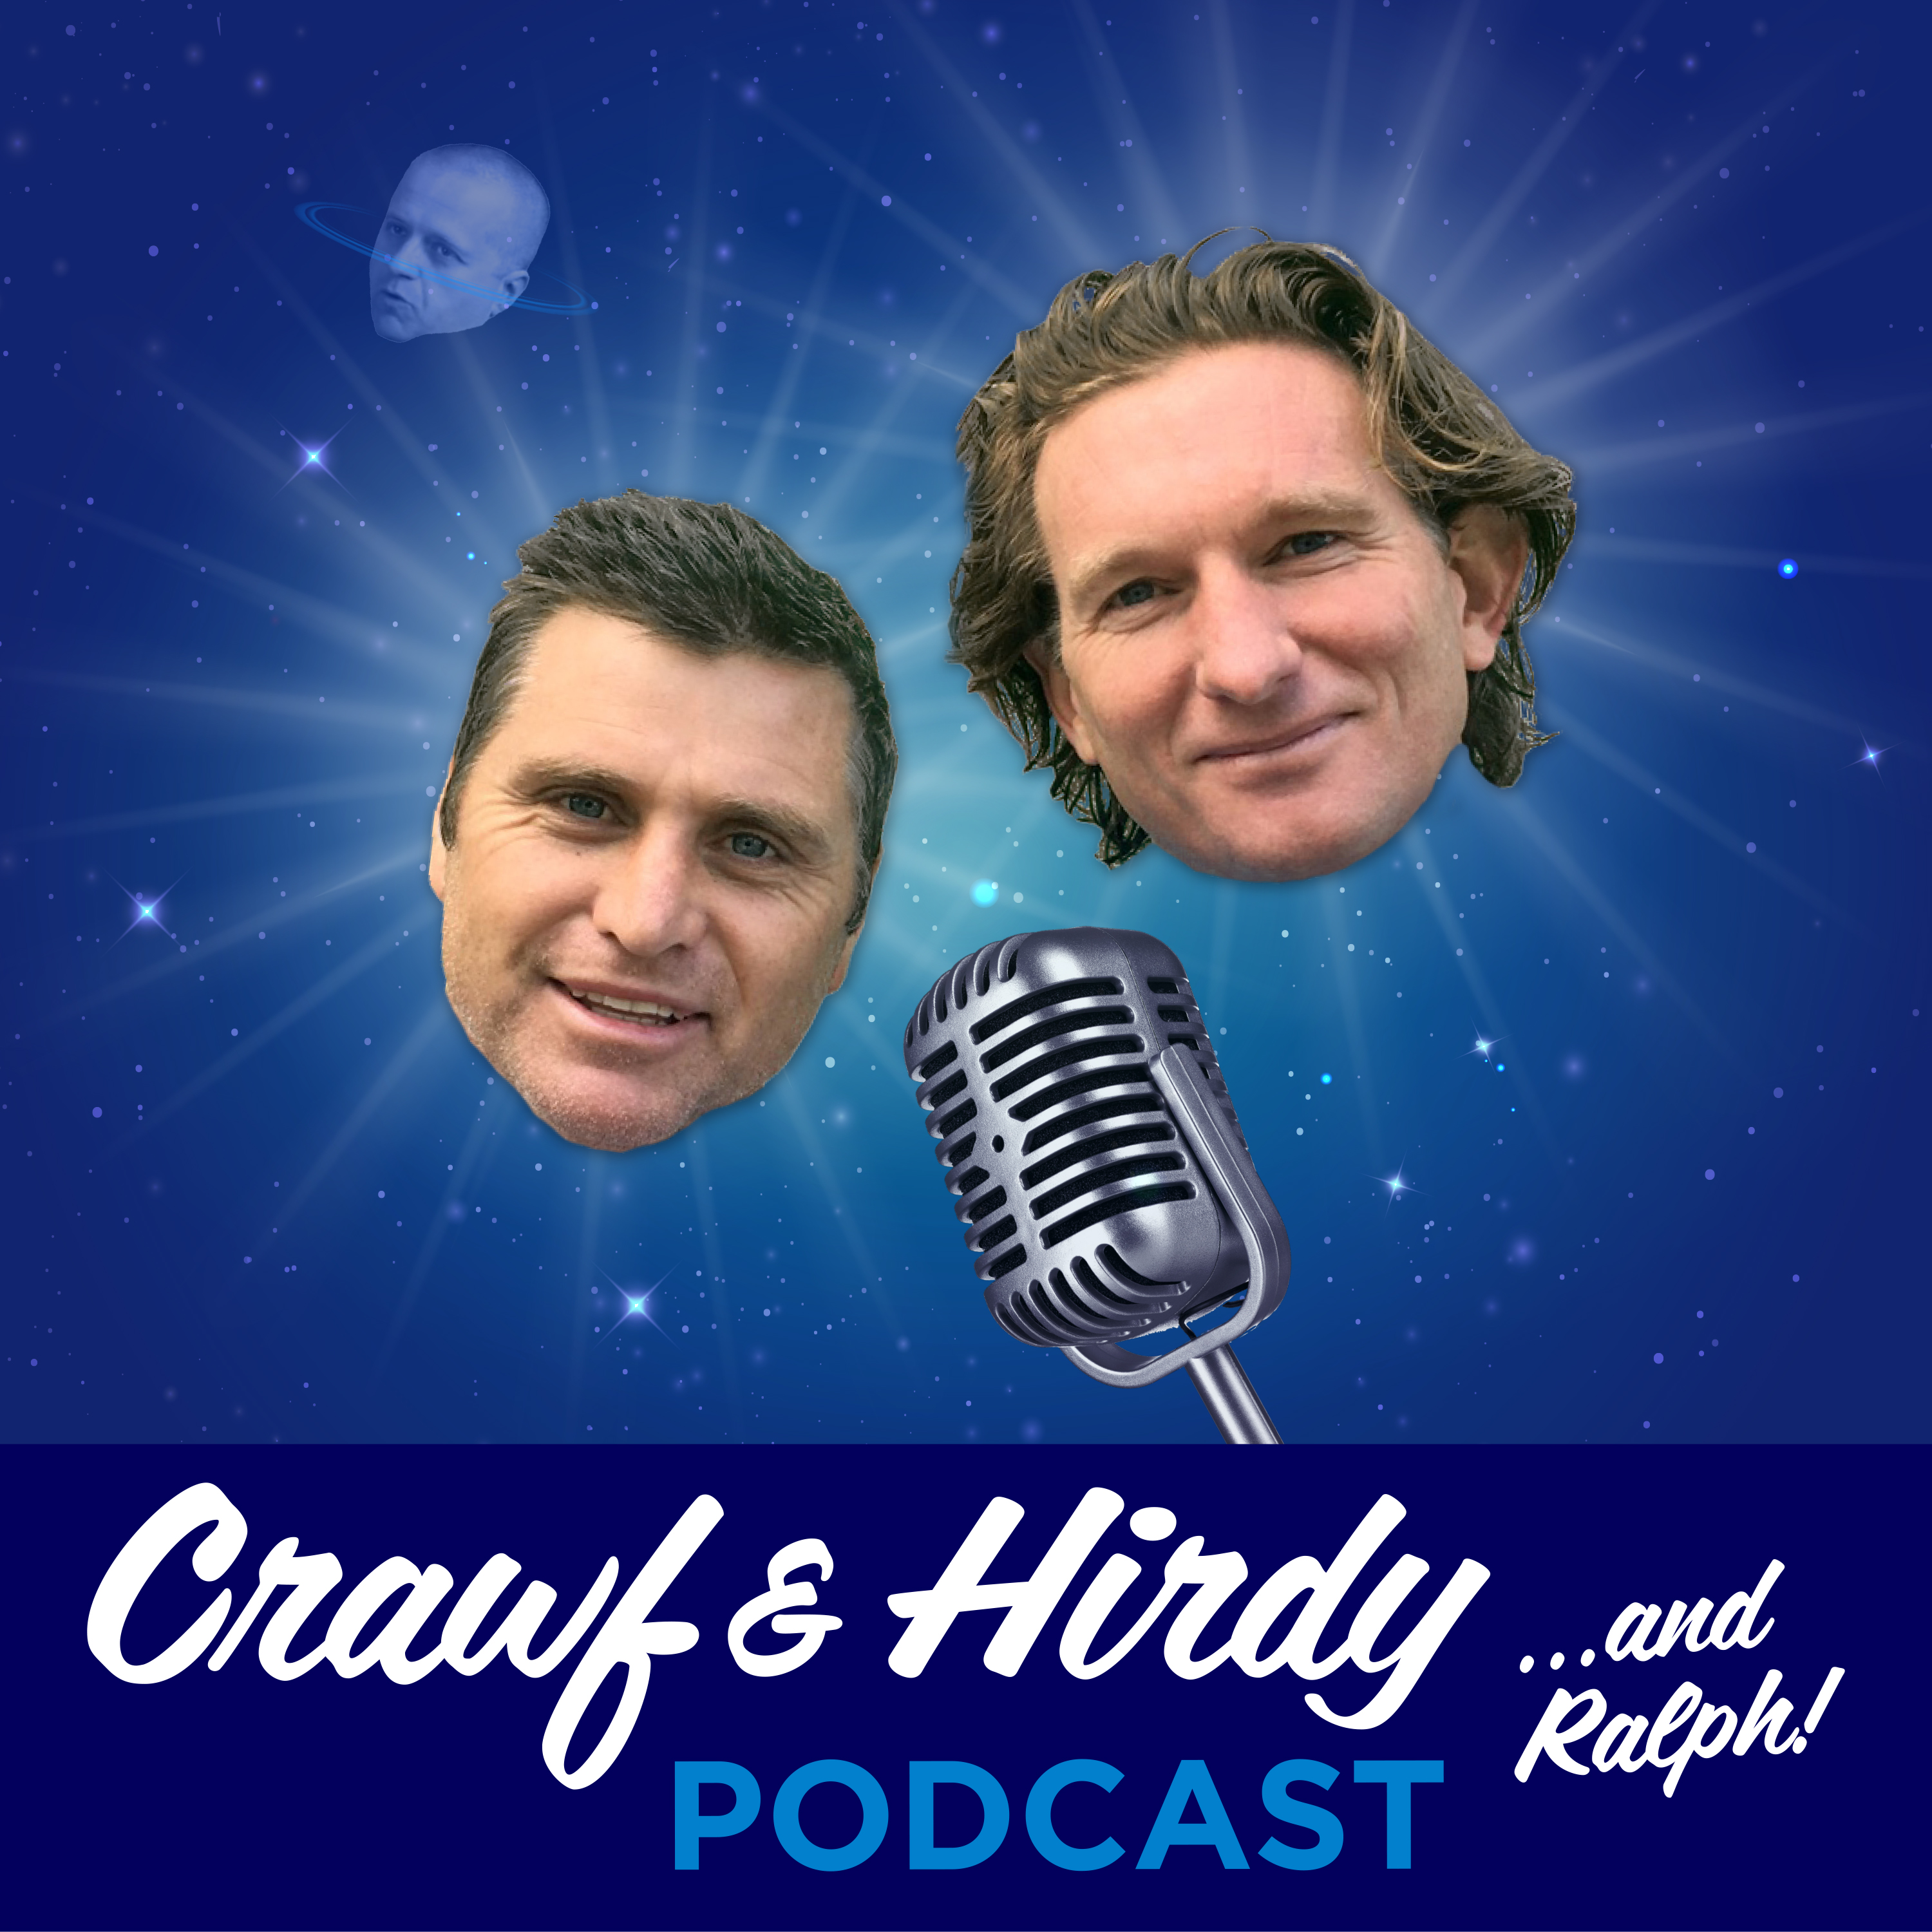 Crawf & Hirdy - We Talk Football